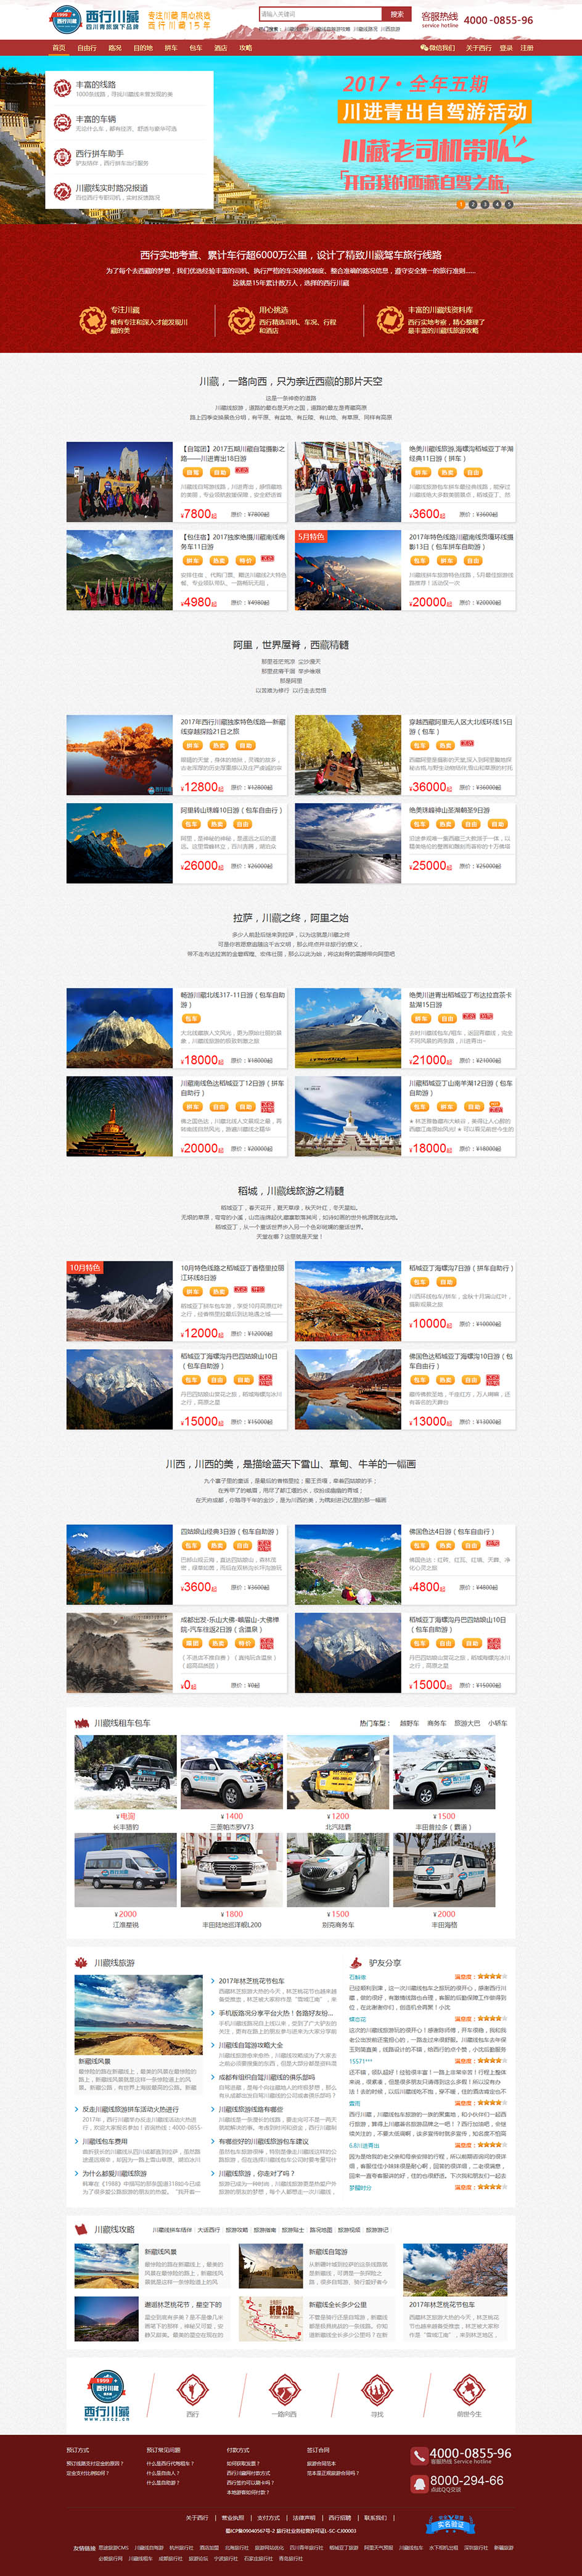 西行川藏自驾旅游网